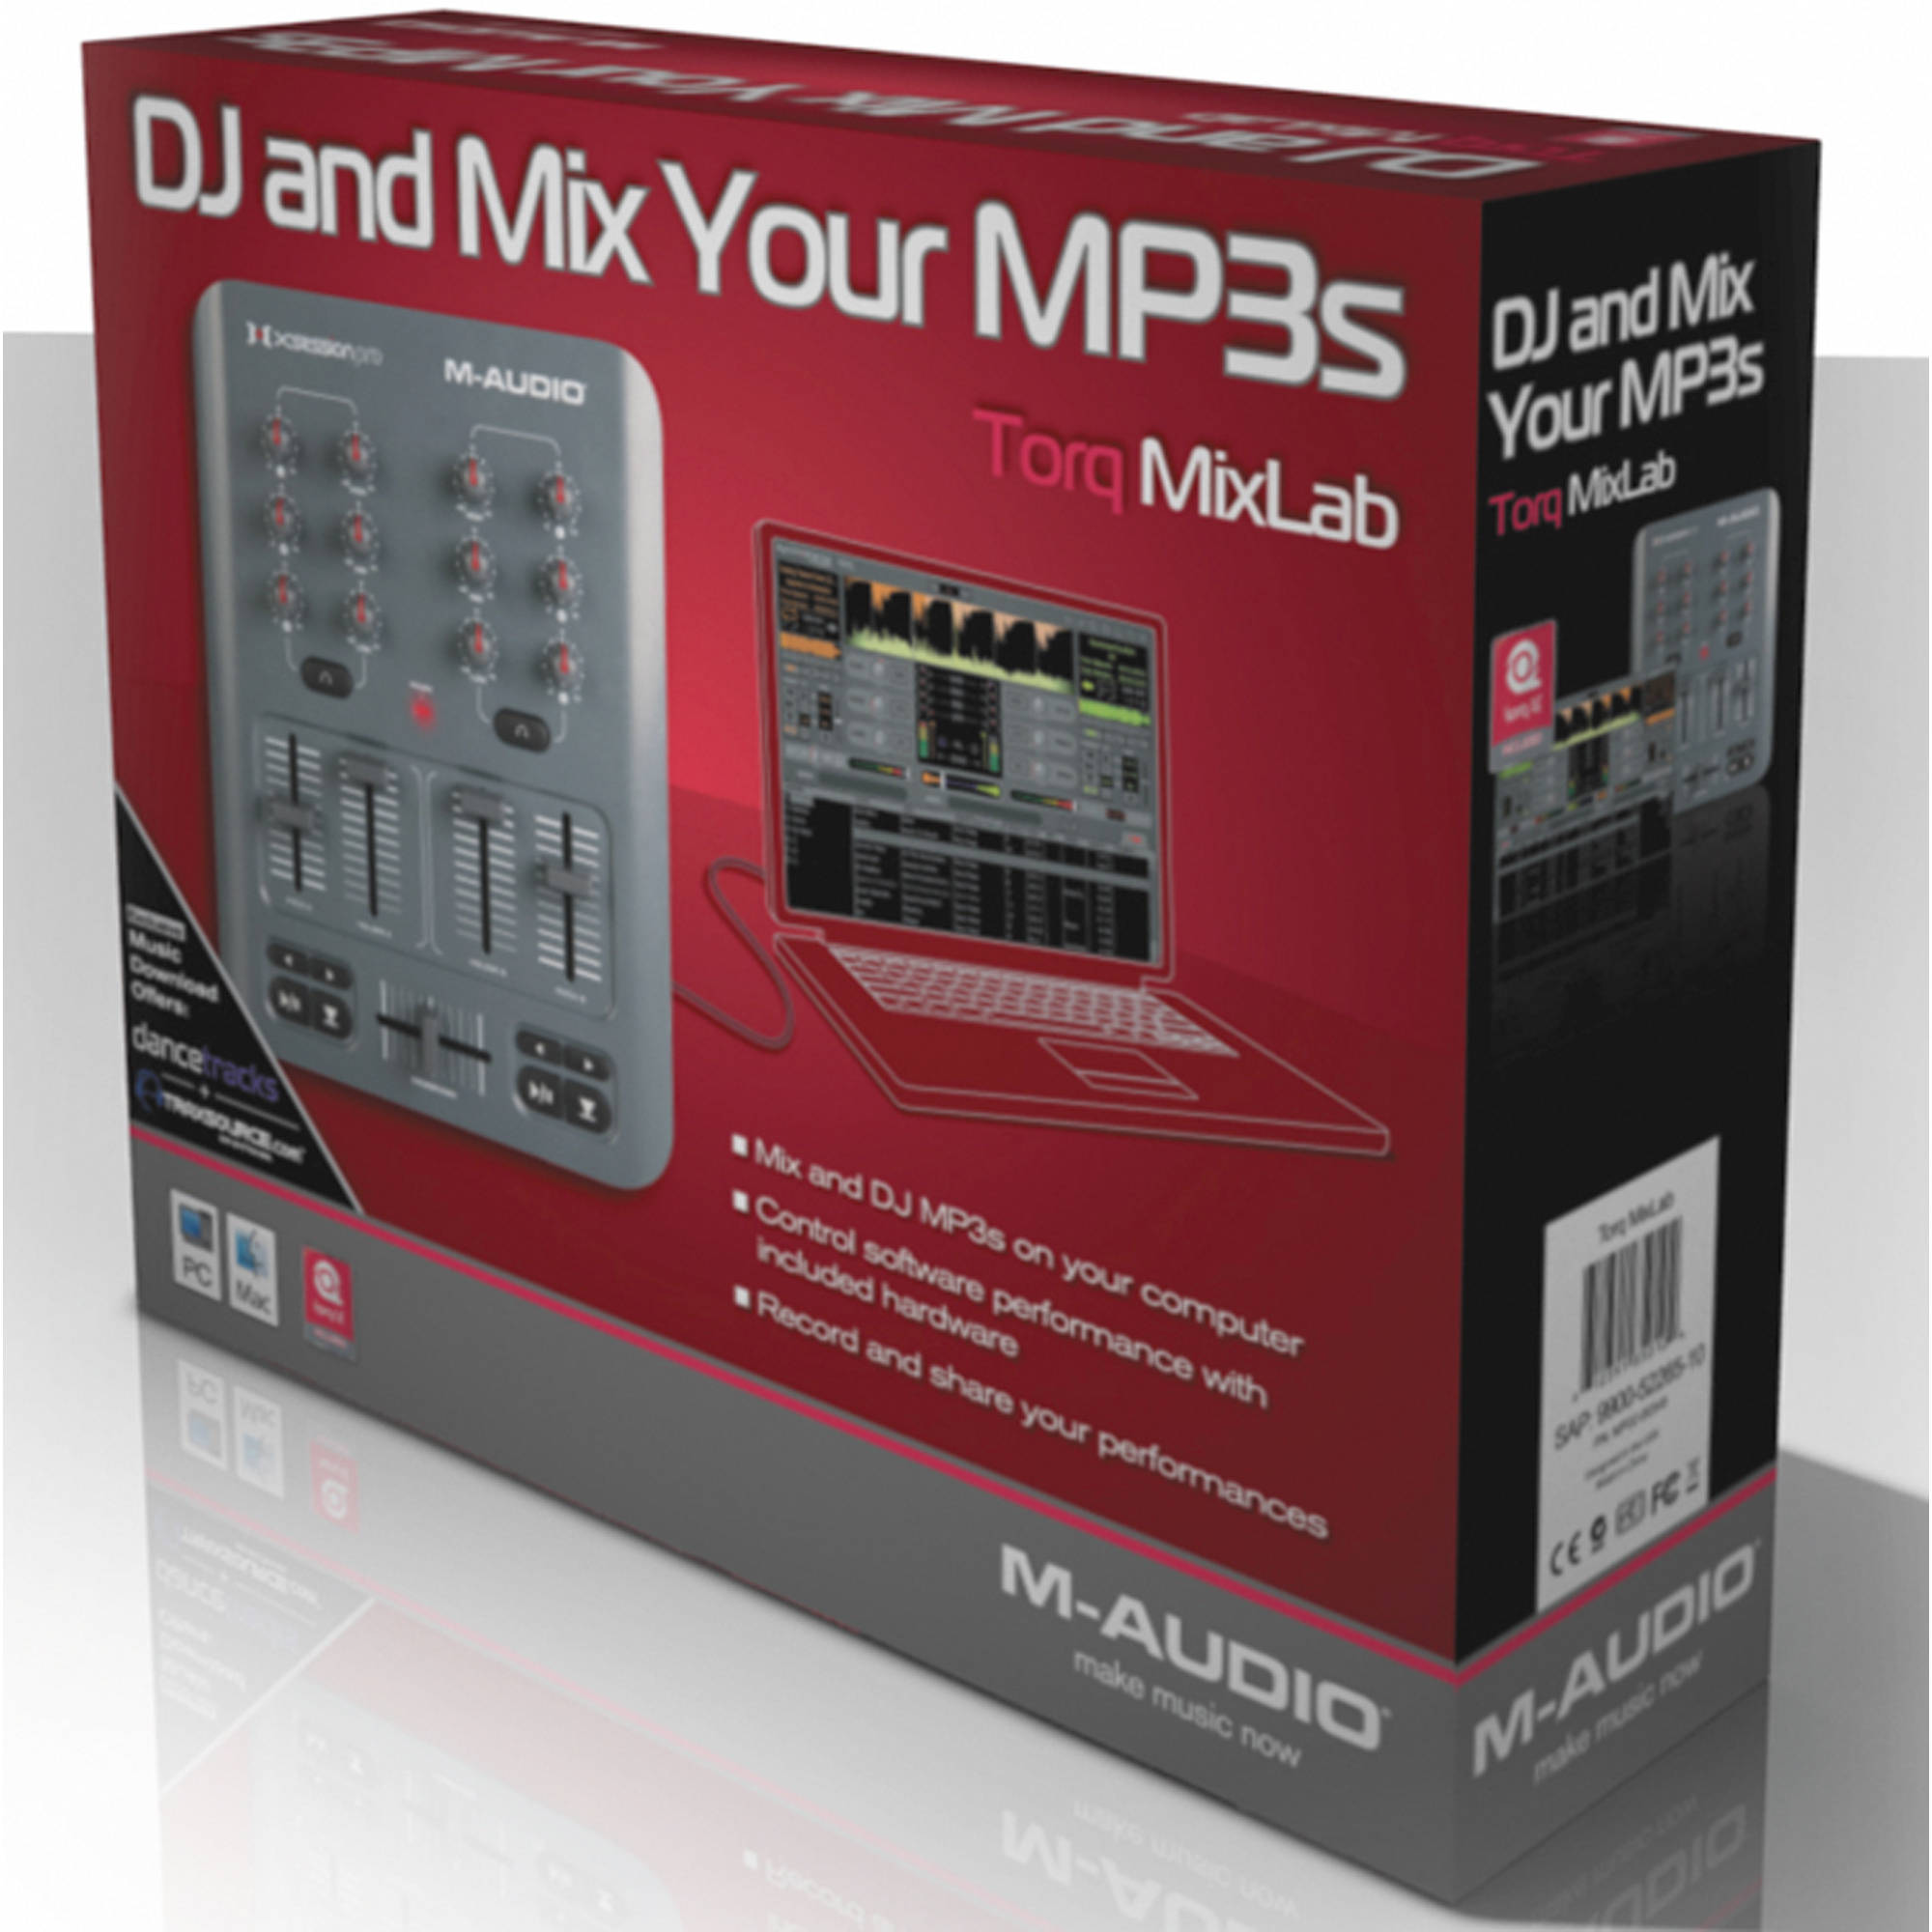 M Audio torq mix lab DJ